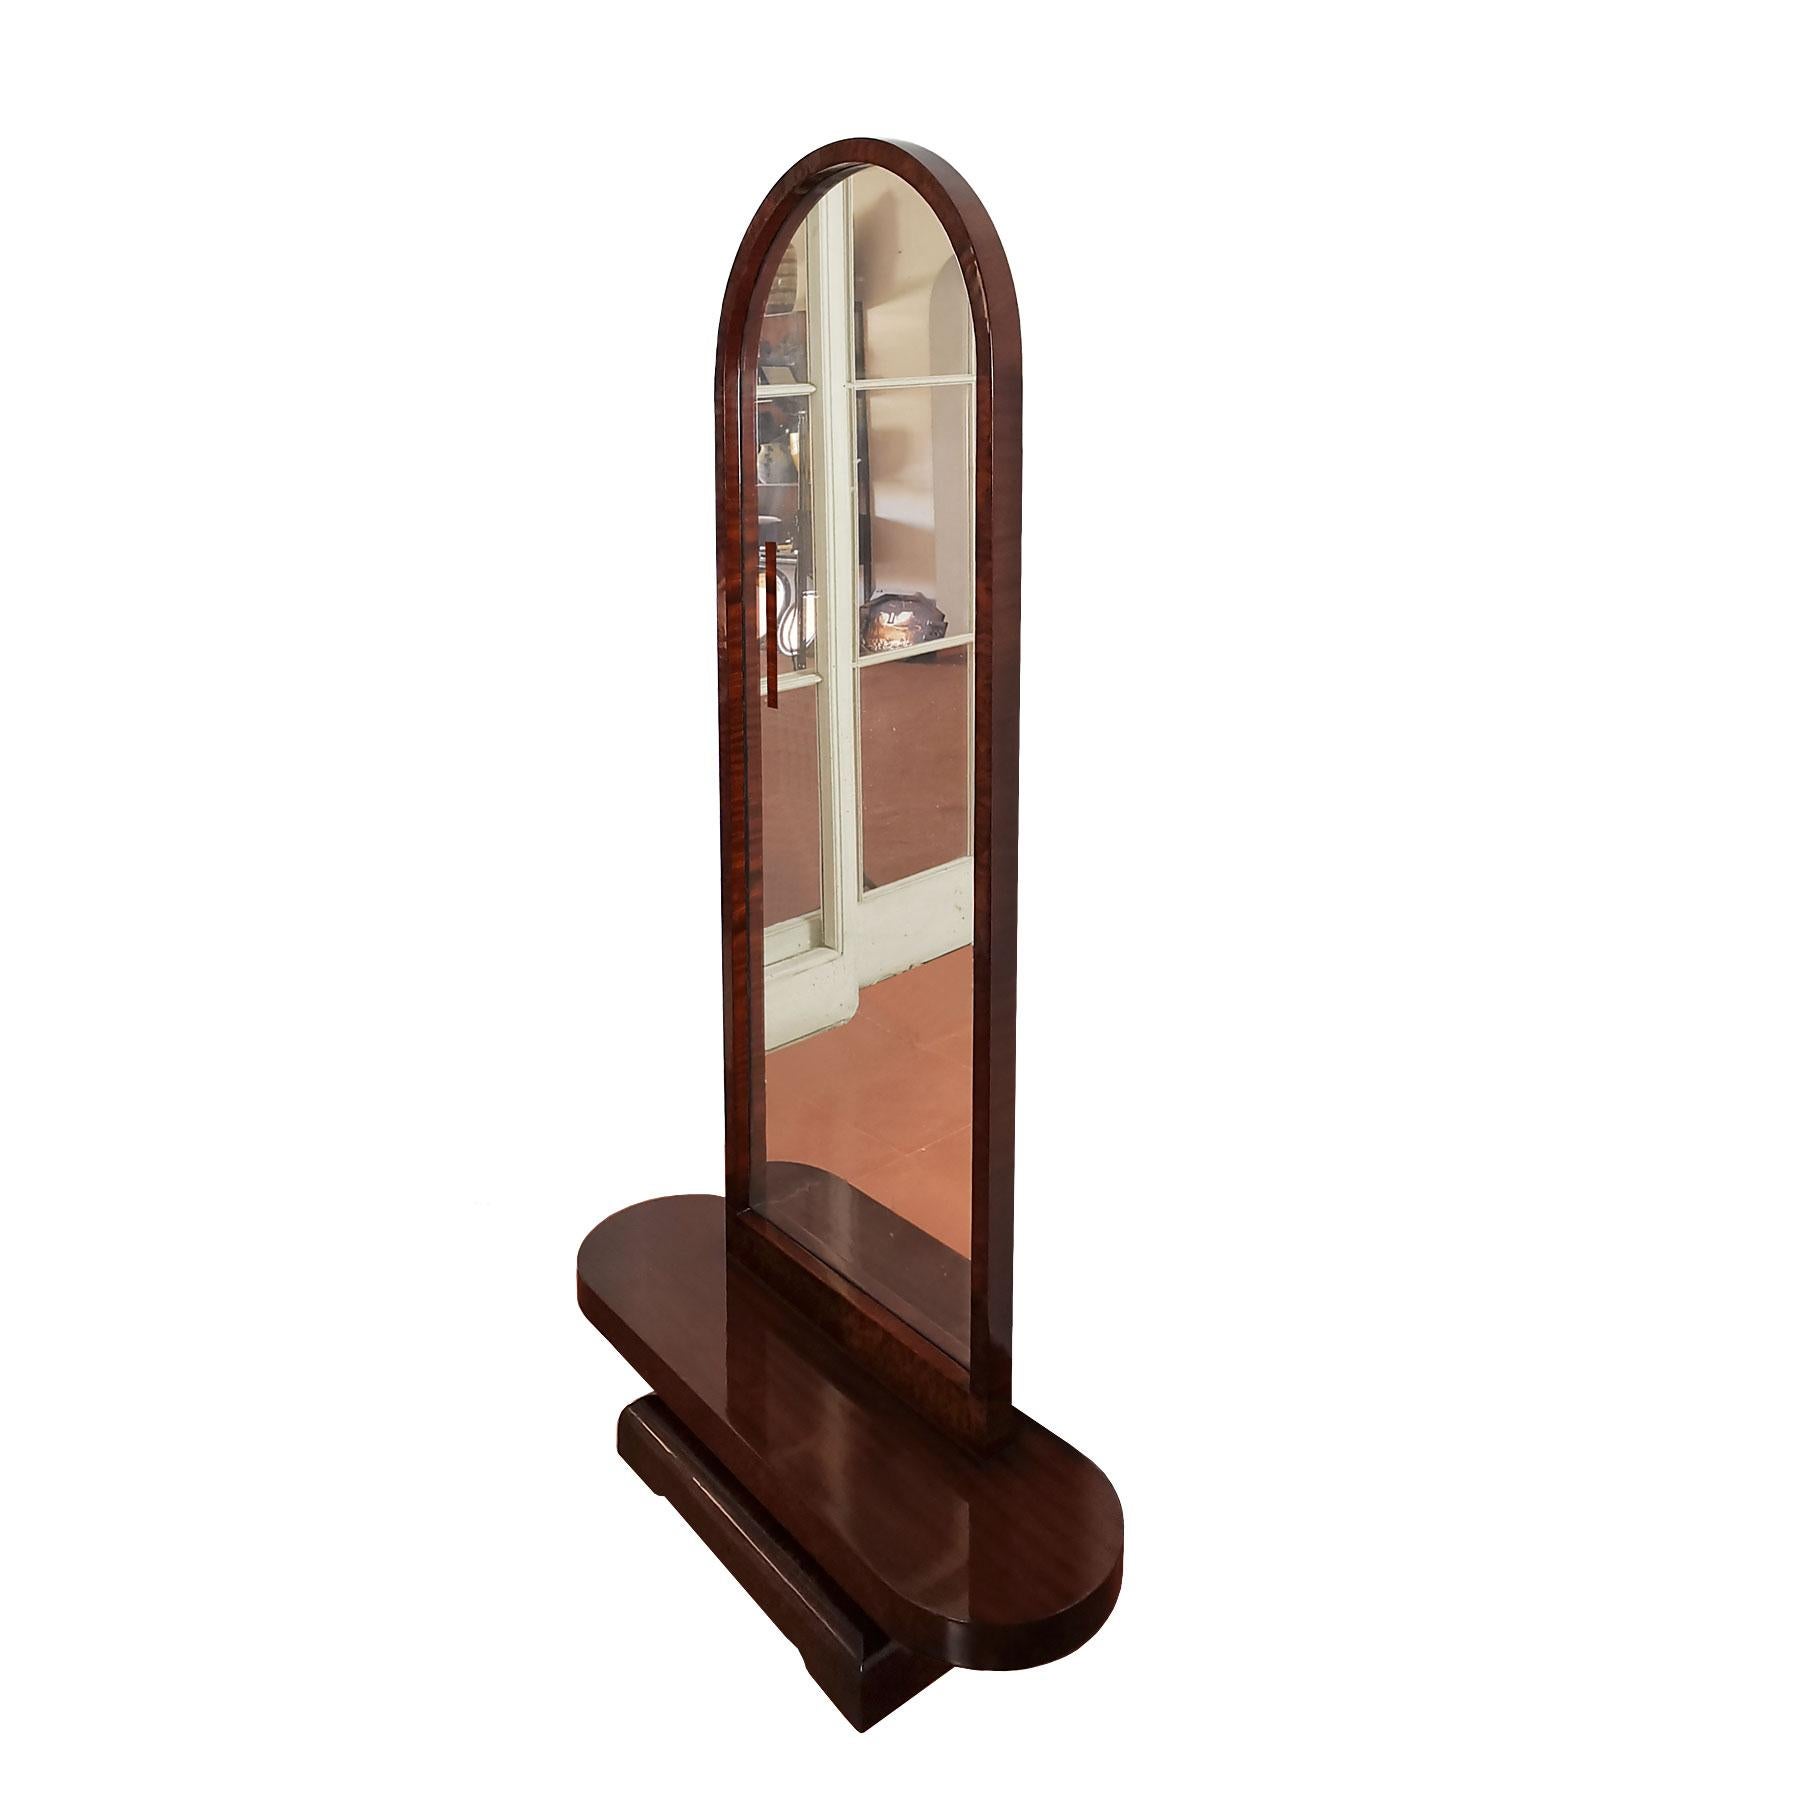 Art Deco Waschtisch aus Massivholz mit Mahagoni und Mahagoniwurzelholzfurnier, französisch poliert. Originaler dicker Spiegel mit Oxidation.
Frankreich, um 1930

Maße des Spiegels: 56 x 4 x 123 cm.